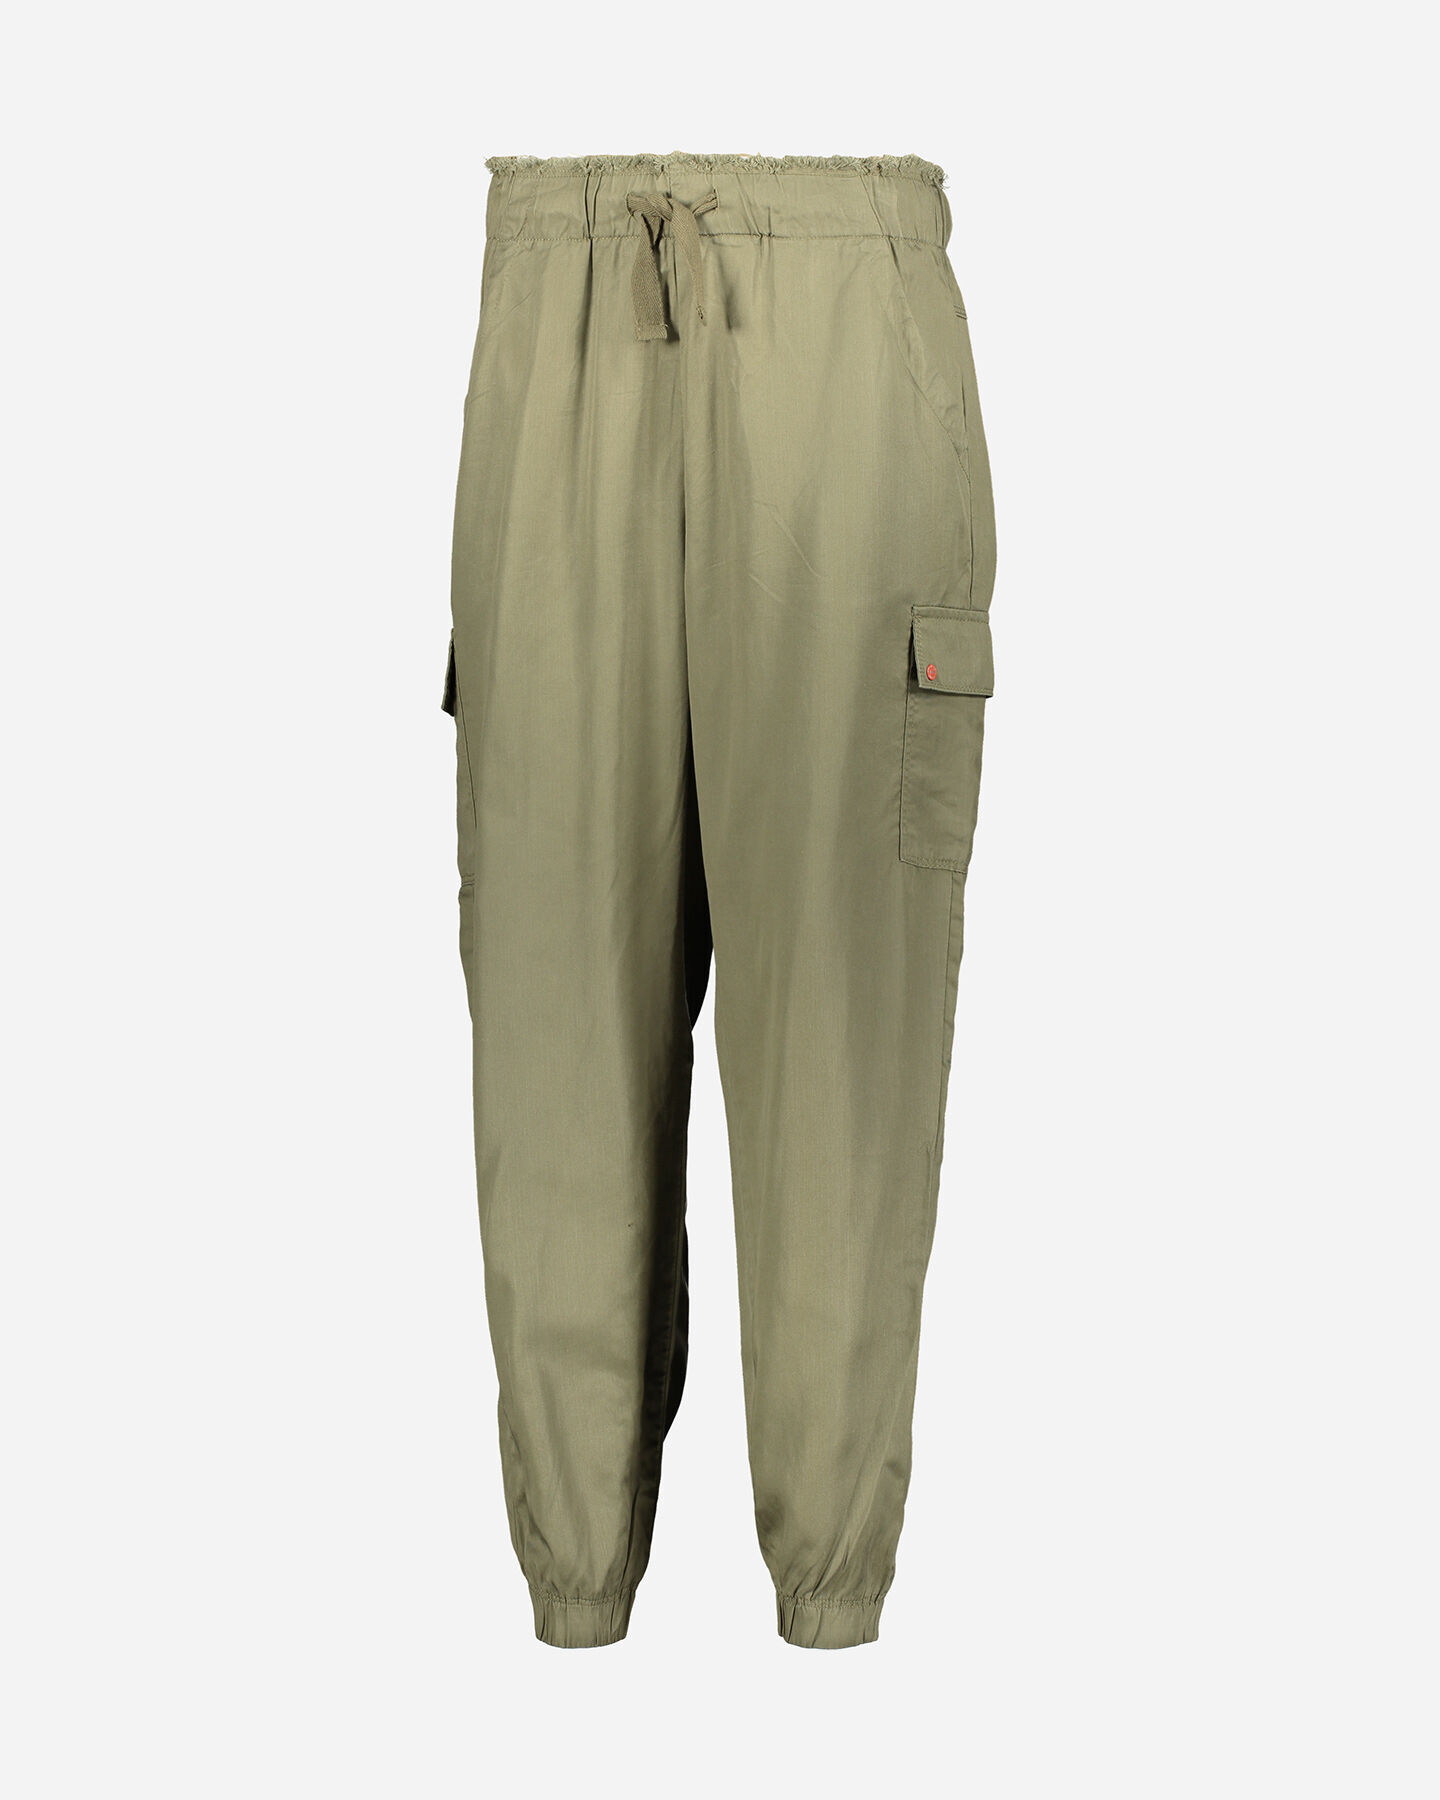  Pantalone MISTRAL TENCEL W S4087908|842|S scatto 4